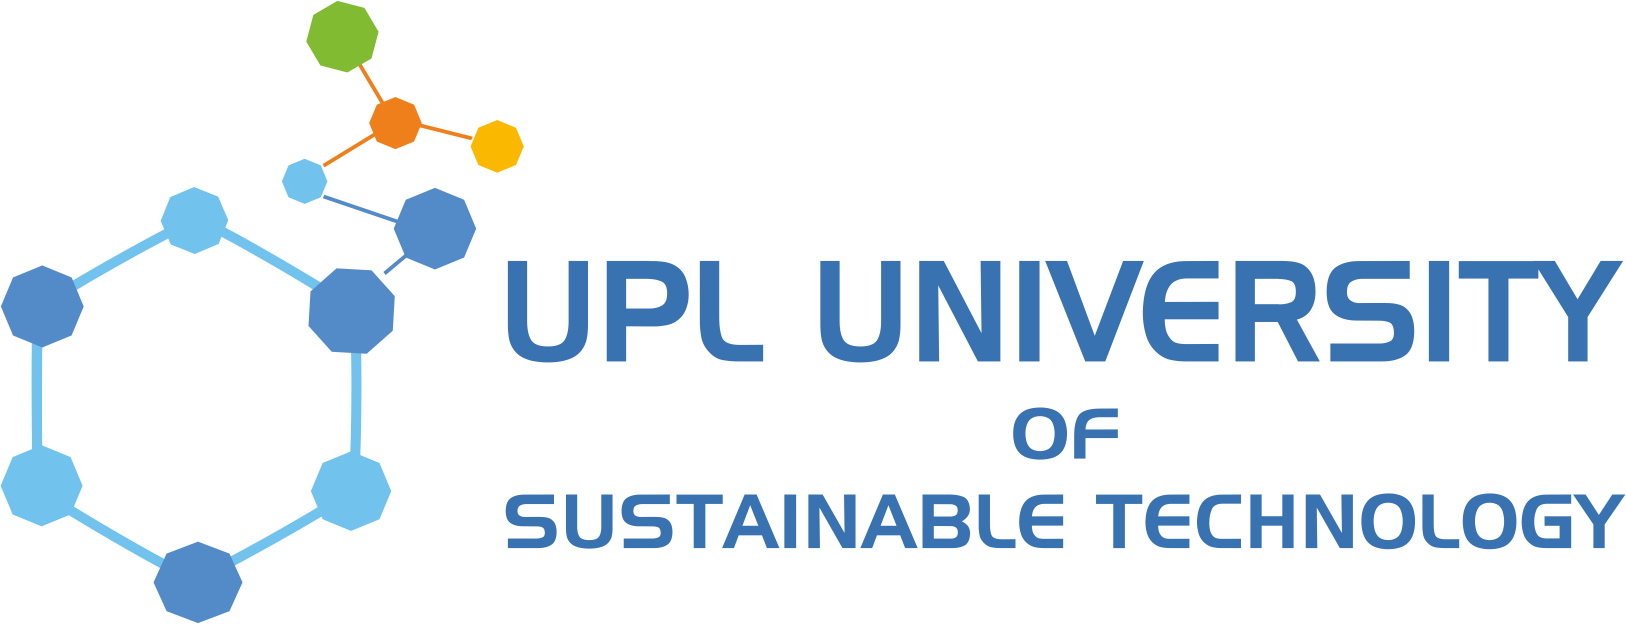 UPL University of Sustainable Technology